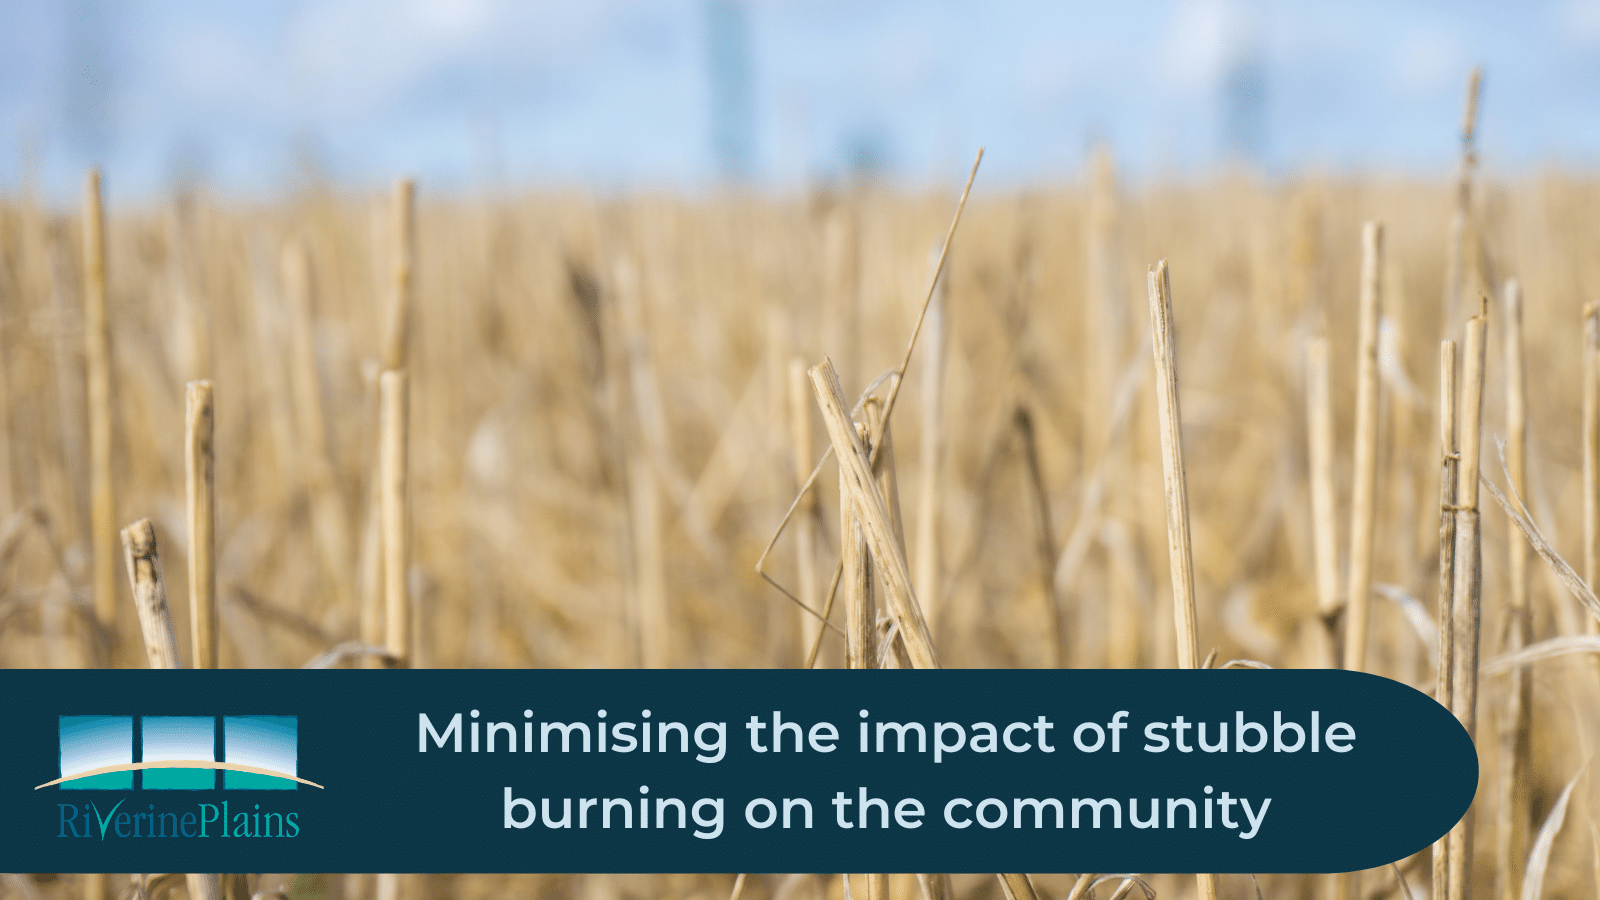 Minimising the impact of stubble burning on the community